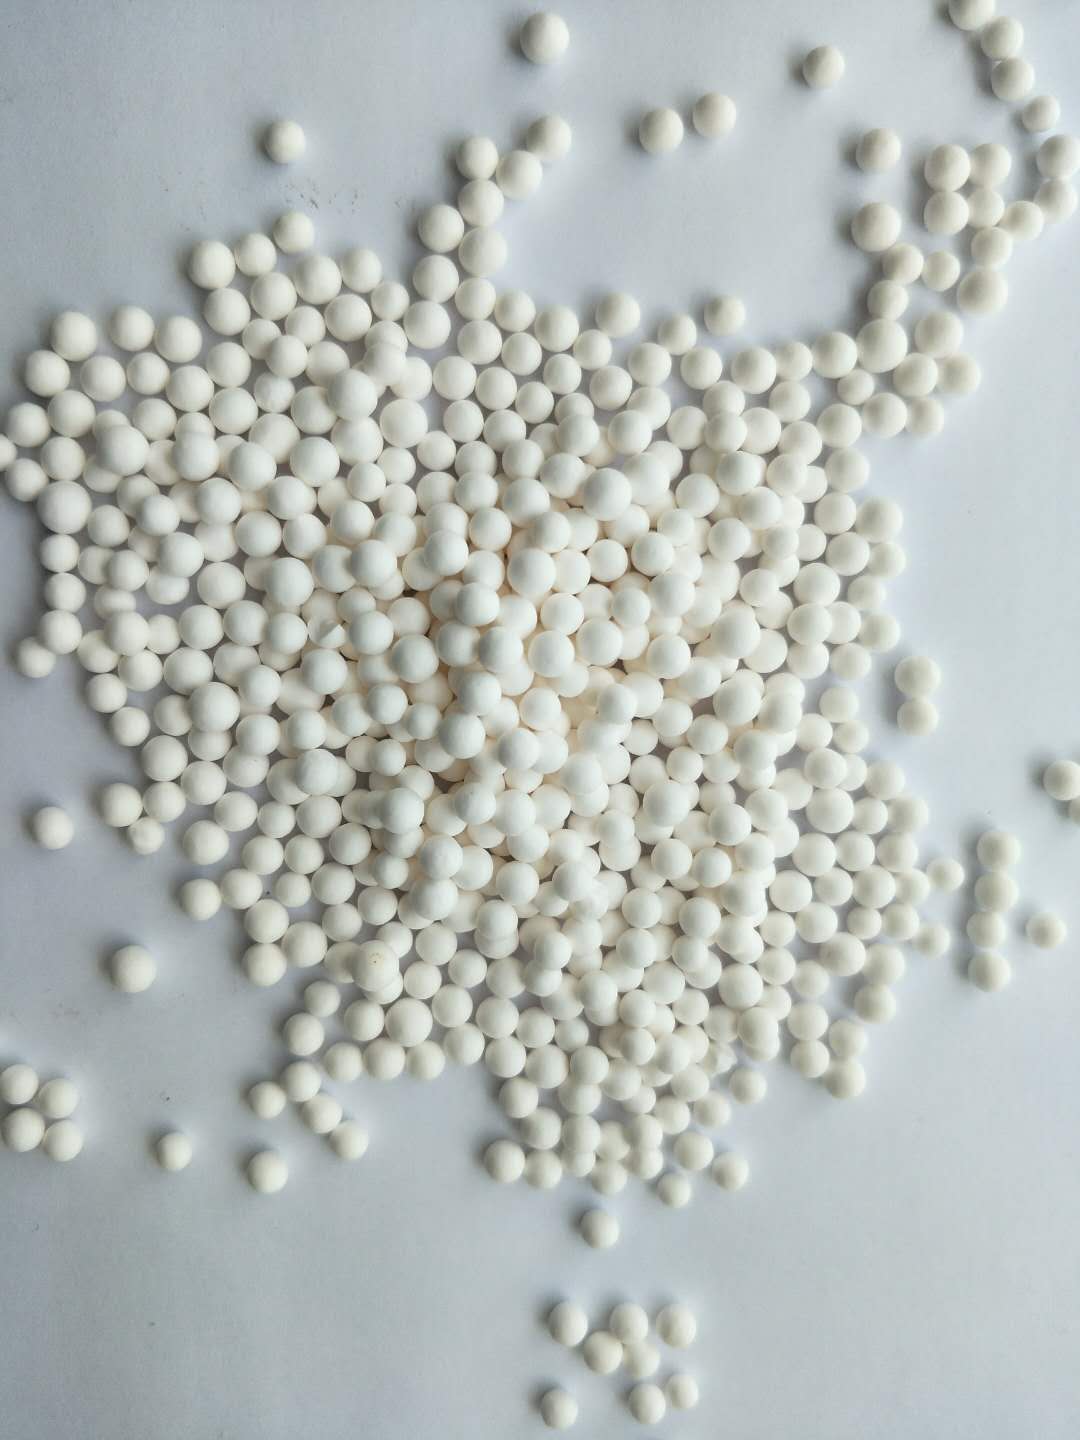 除氟剂吸附剂小球活性氧化铝球￠0.5-1毫米, 1-2毫米, 2-3毫米